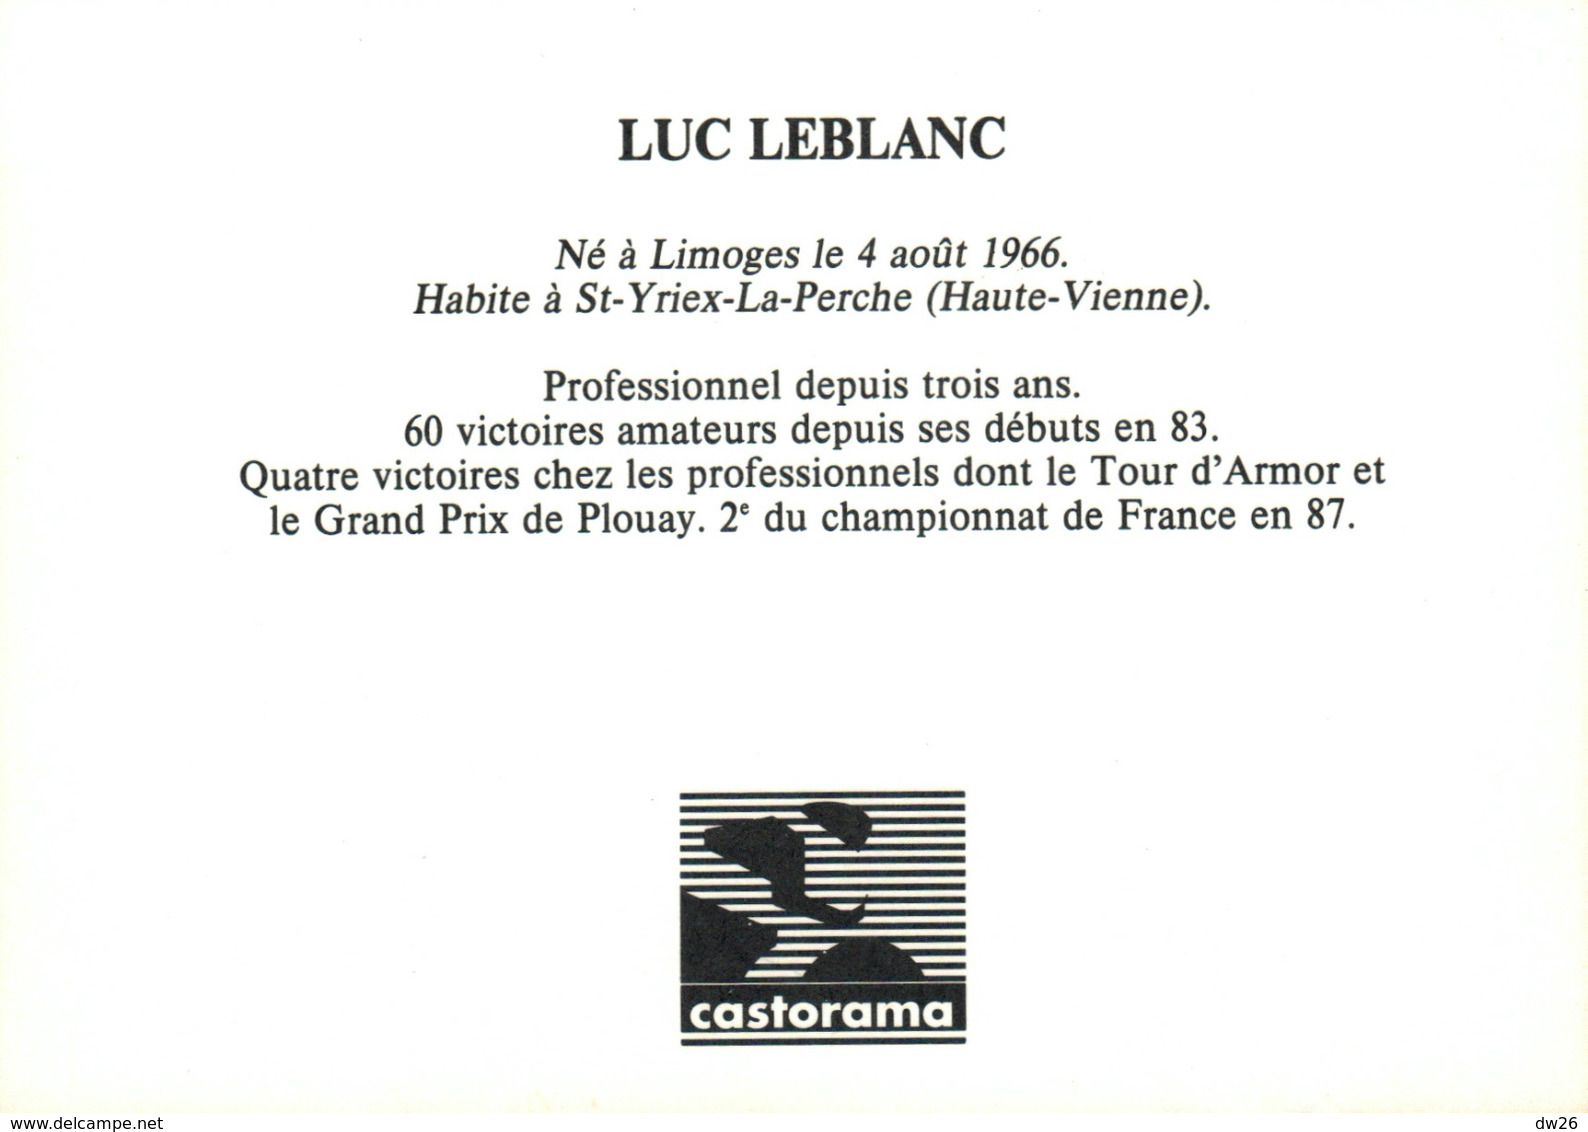 Cyclisme - Luc Leblanc, Cycliste Professionnel, Equipe Castorama (avec Palmarès) - Deportes